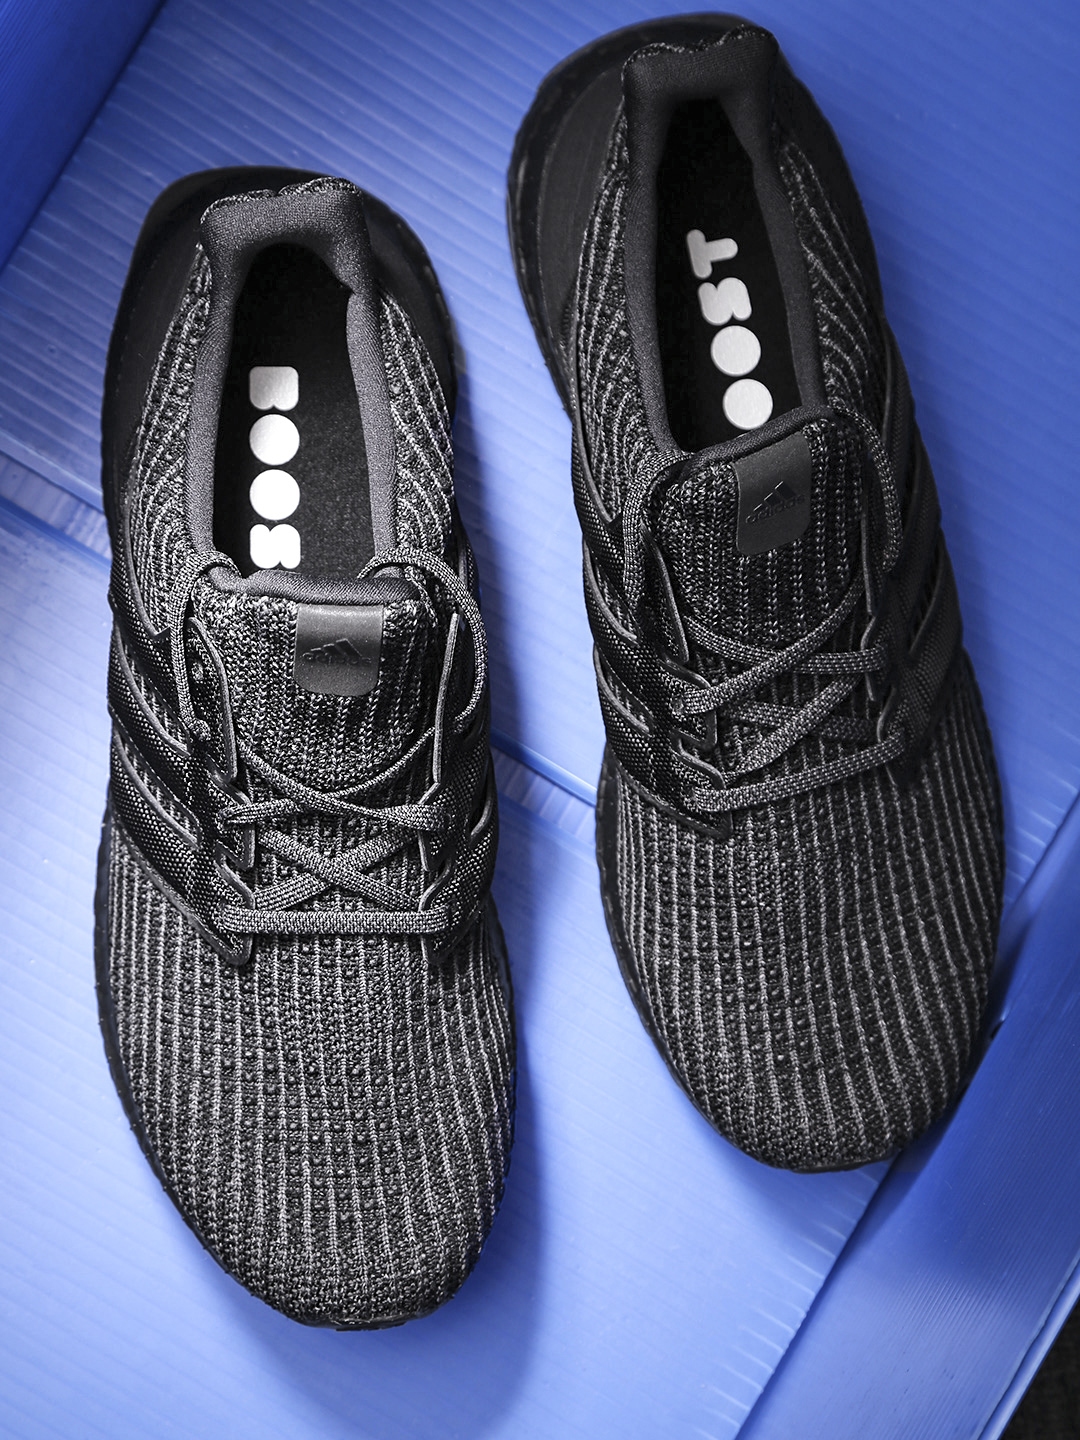 Ultraboost Woven Running Shoes 